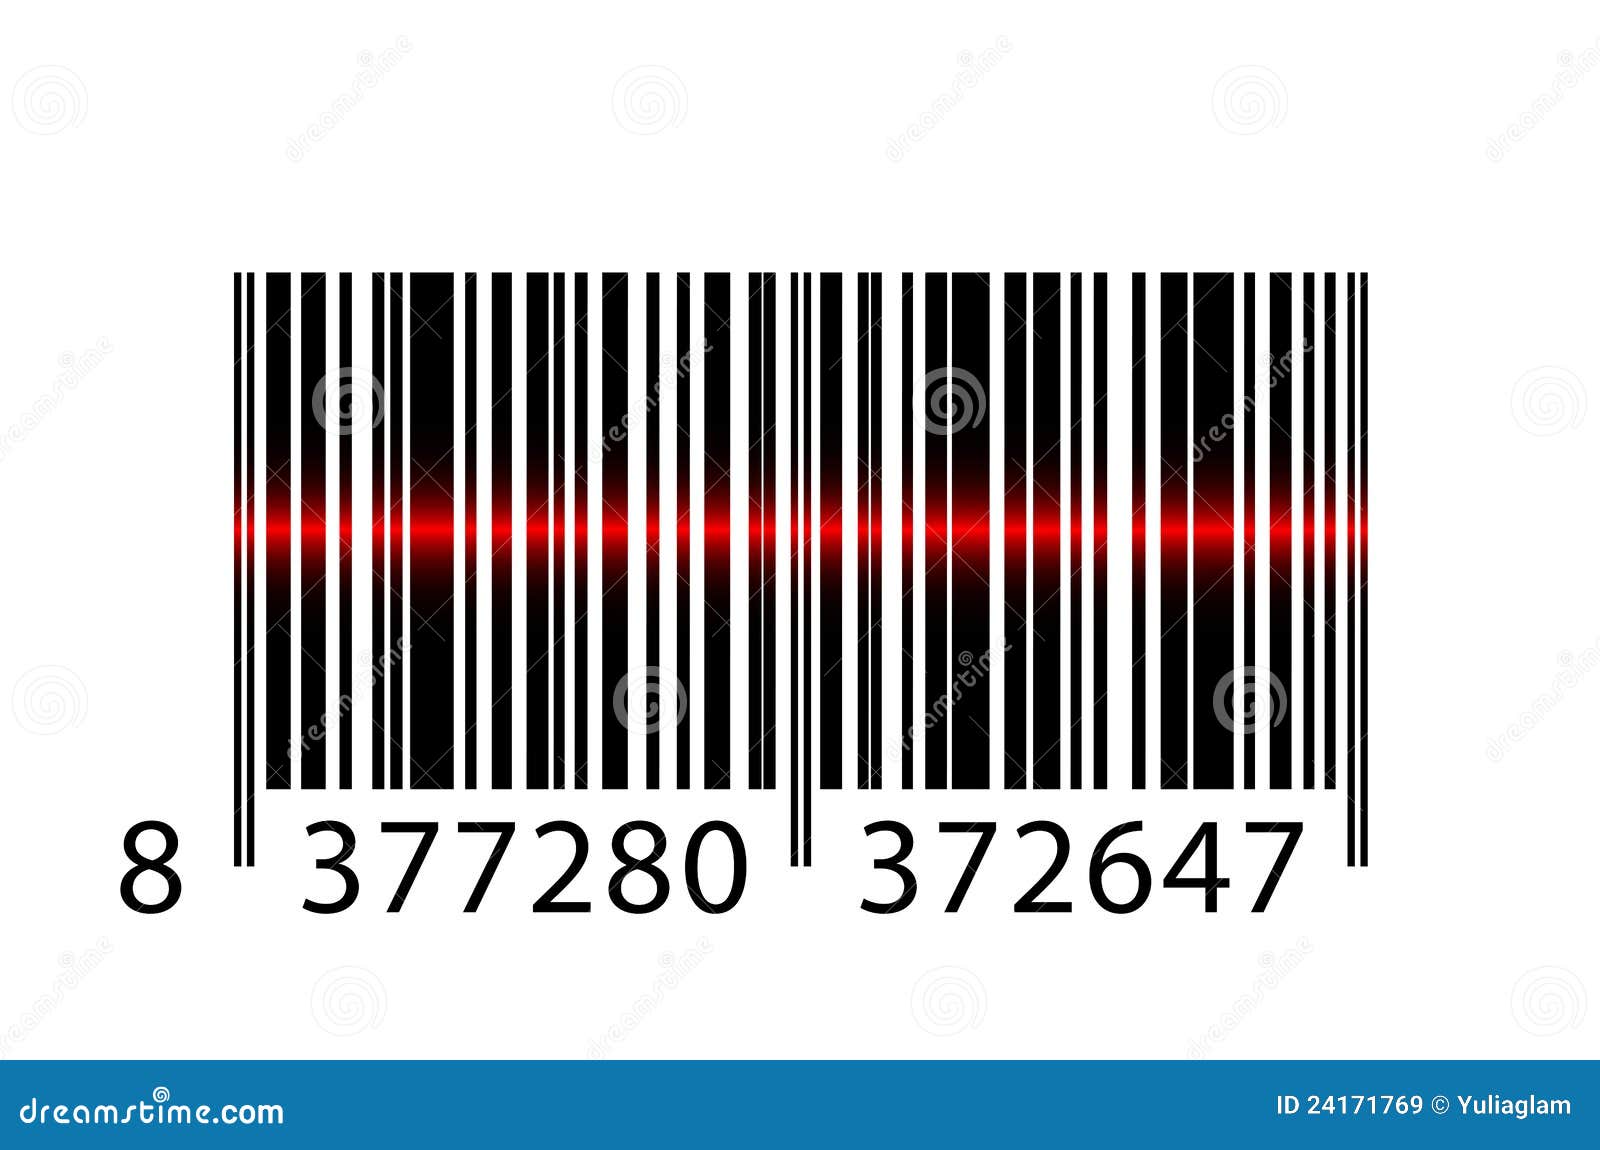 Barcodestrållaser. Vektor för laser för barcodestrålillustration